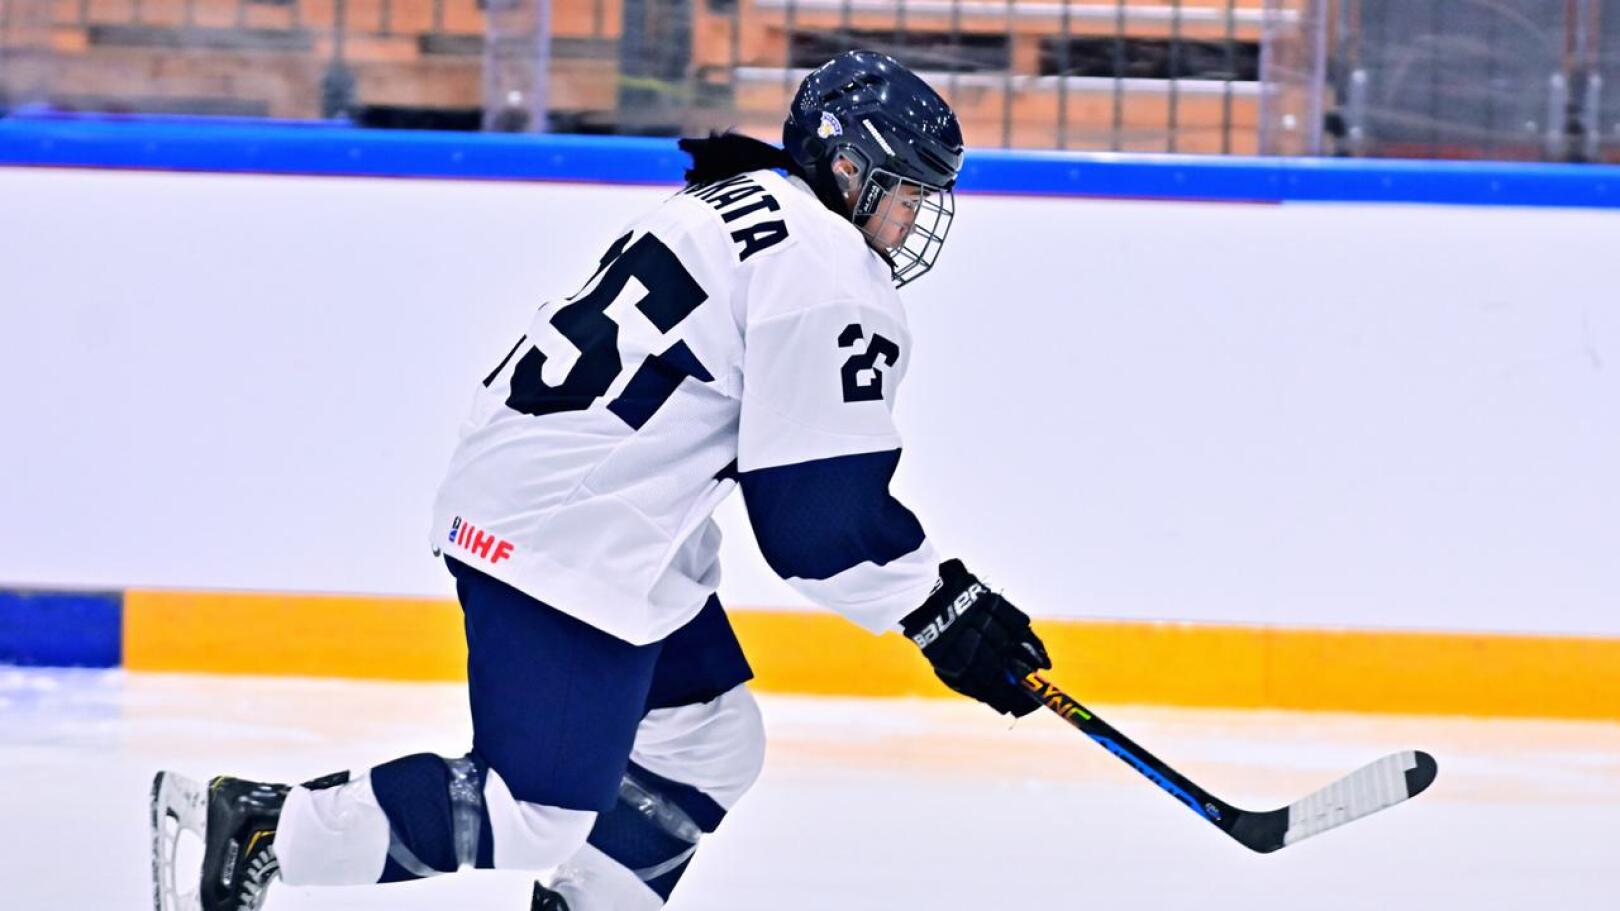 TUS-kasvatti Abigail Byskata ratkaisi Suomelle pronssin nuorten Euroopan talviolympiafestivaaleilta. Kuva tammikuun 18-vuotiaiden MM-kisoista, jossa Byskata edusti myös Suomea.